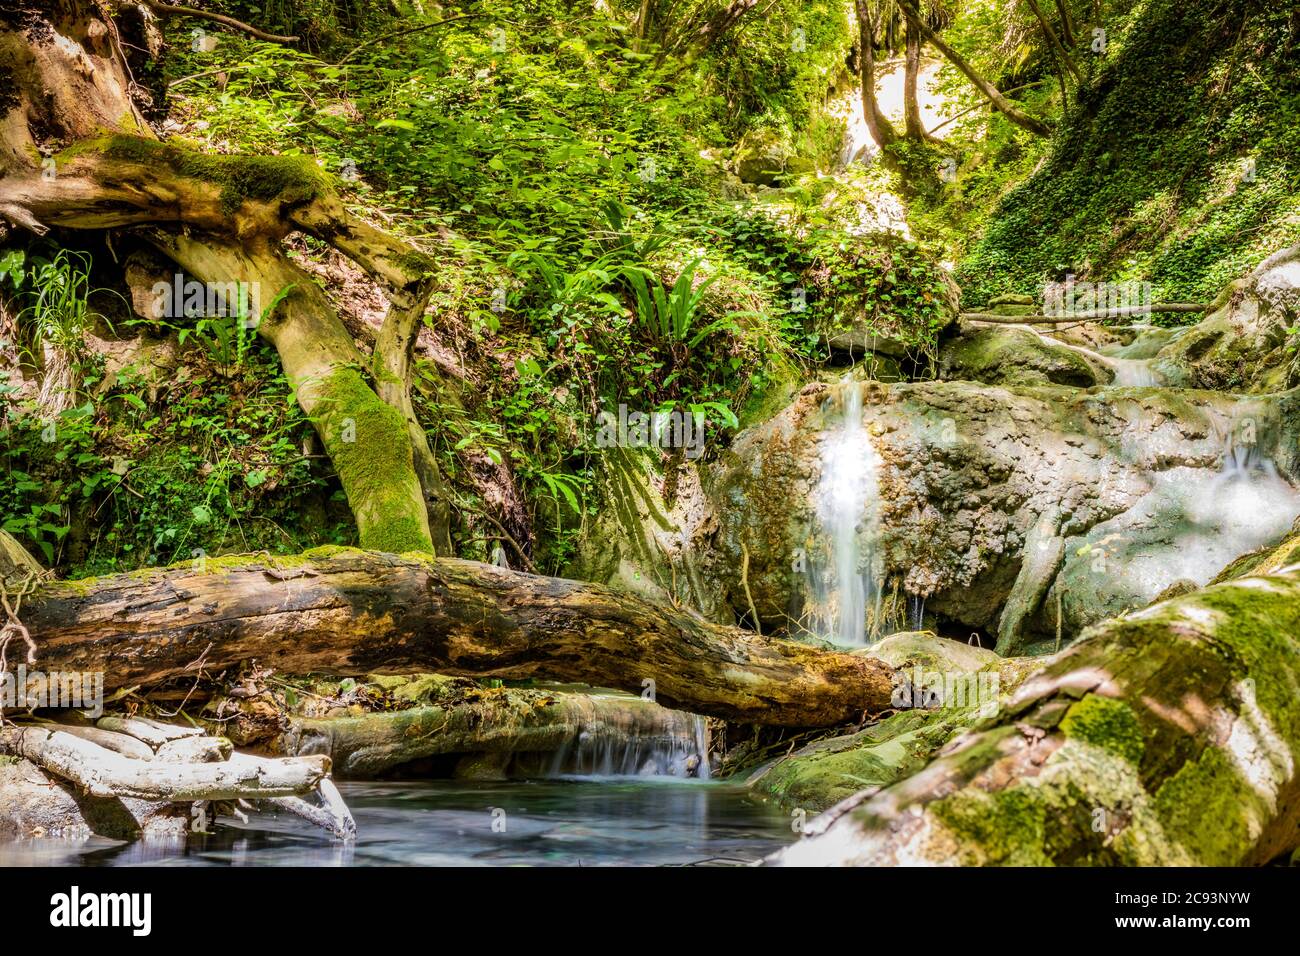 Cascades du ruisseau Rioscuro, à Cinito Romano, Rome, Lazio, Italie. Végétation riche dans les bois. Endroit frais, rafraîchissements de la chaleur estivale. Trekk Banque D'Images